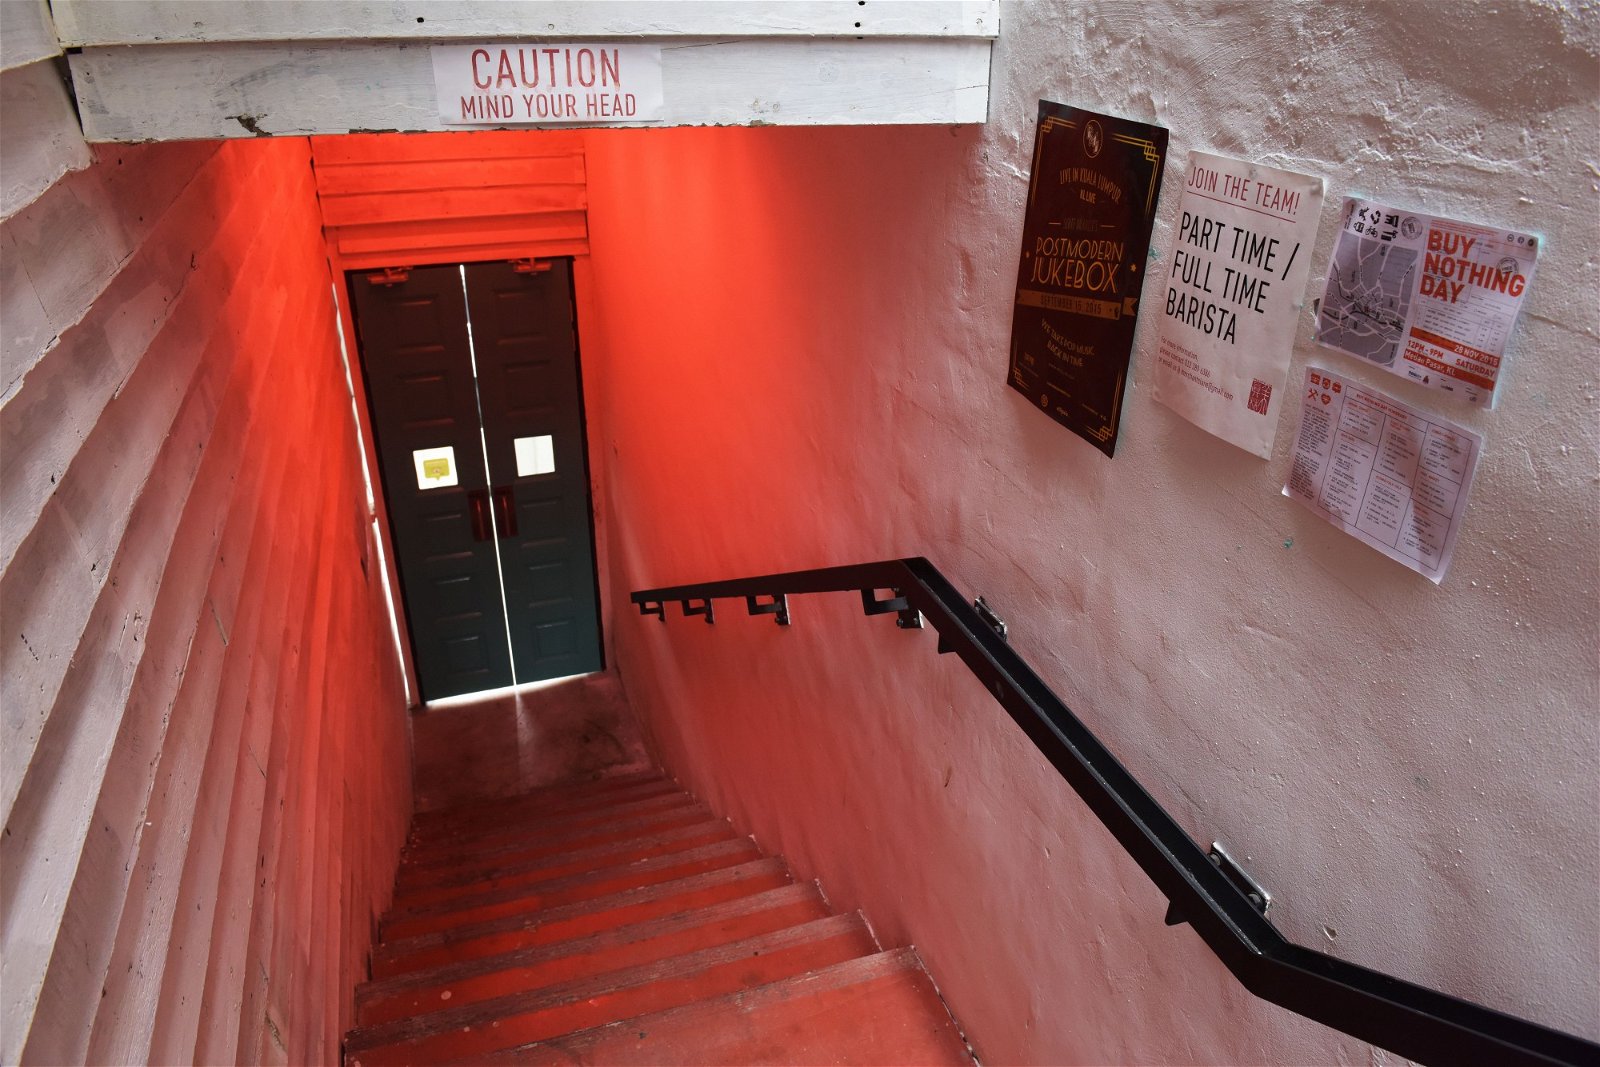 咖啡馆较后方的空间以蚊香及艳丽的花朵图案装饰，配合大门楼梯处和通往厨房走廊处的红灯管，设计师有意以隐晦的方式重现红粉青楼。